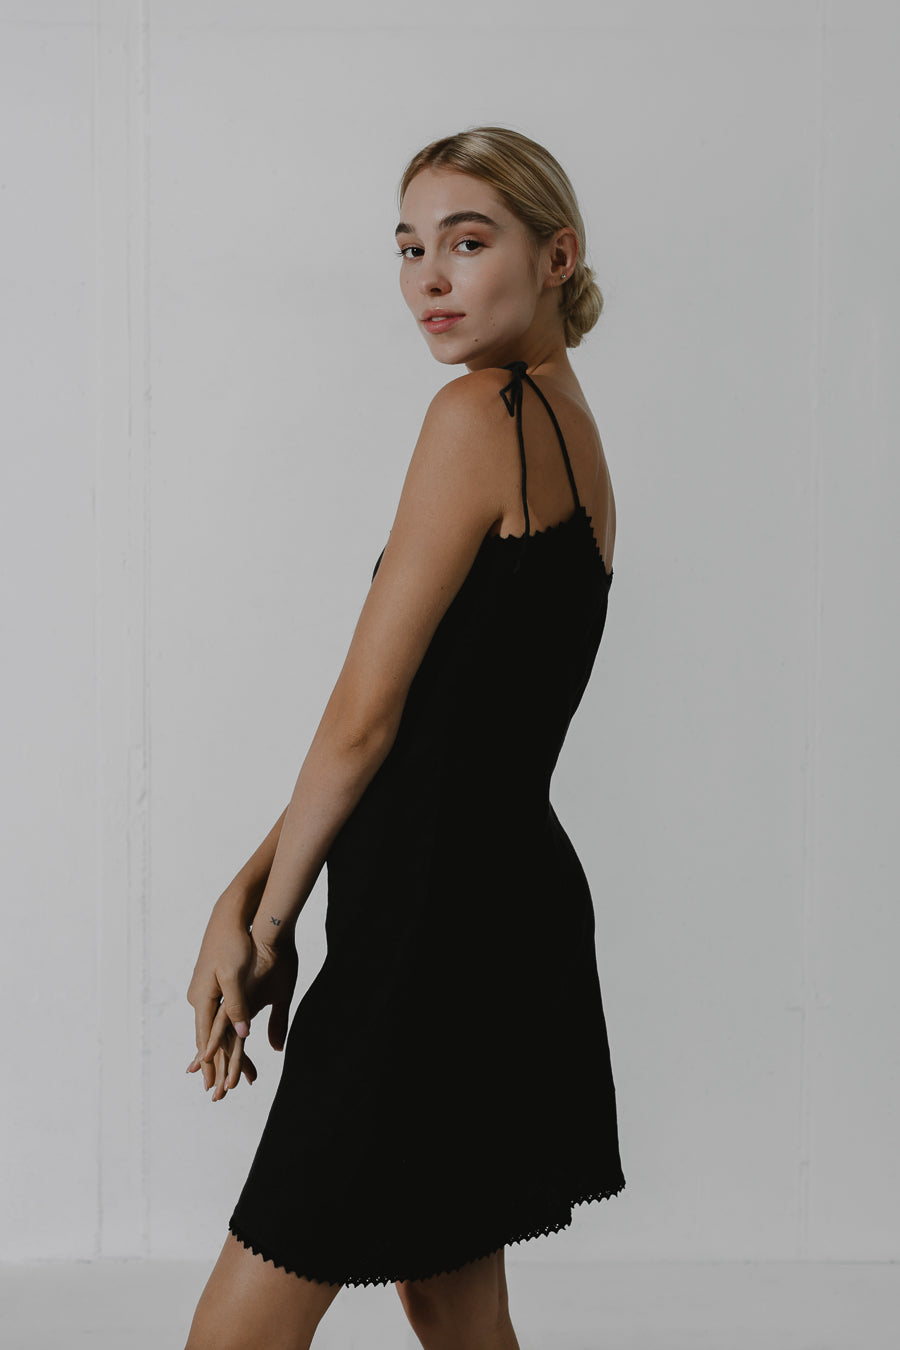 MAGNETITE Little black dress bias-cut design with adjustable shoulder straps